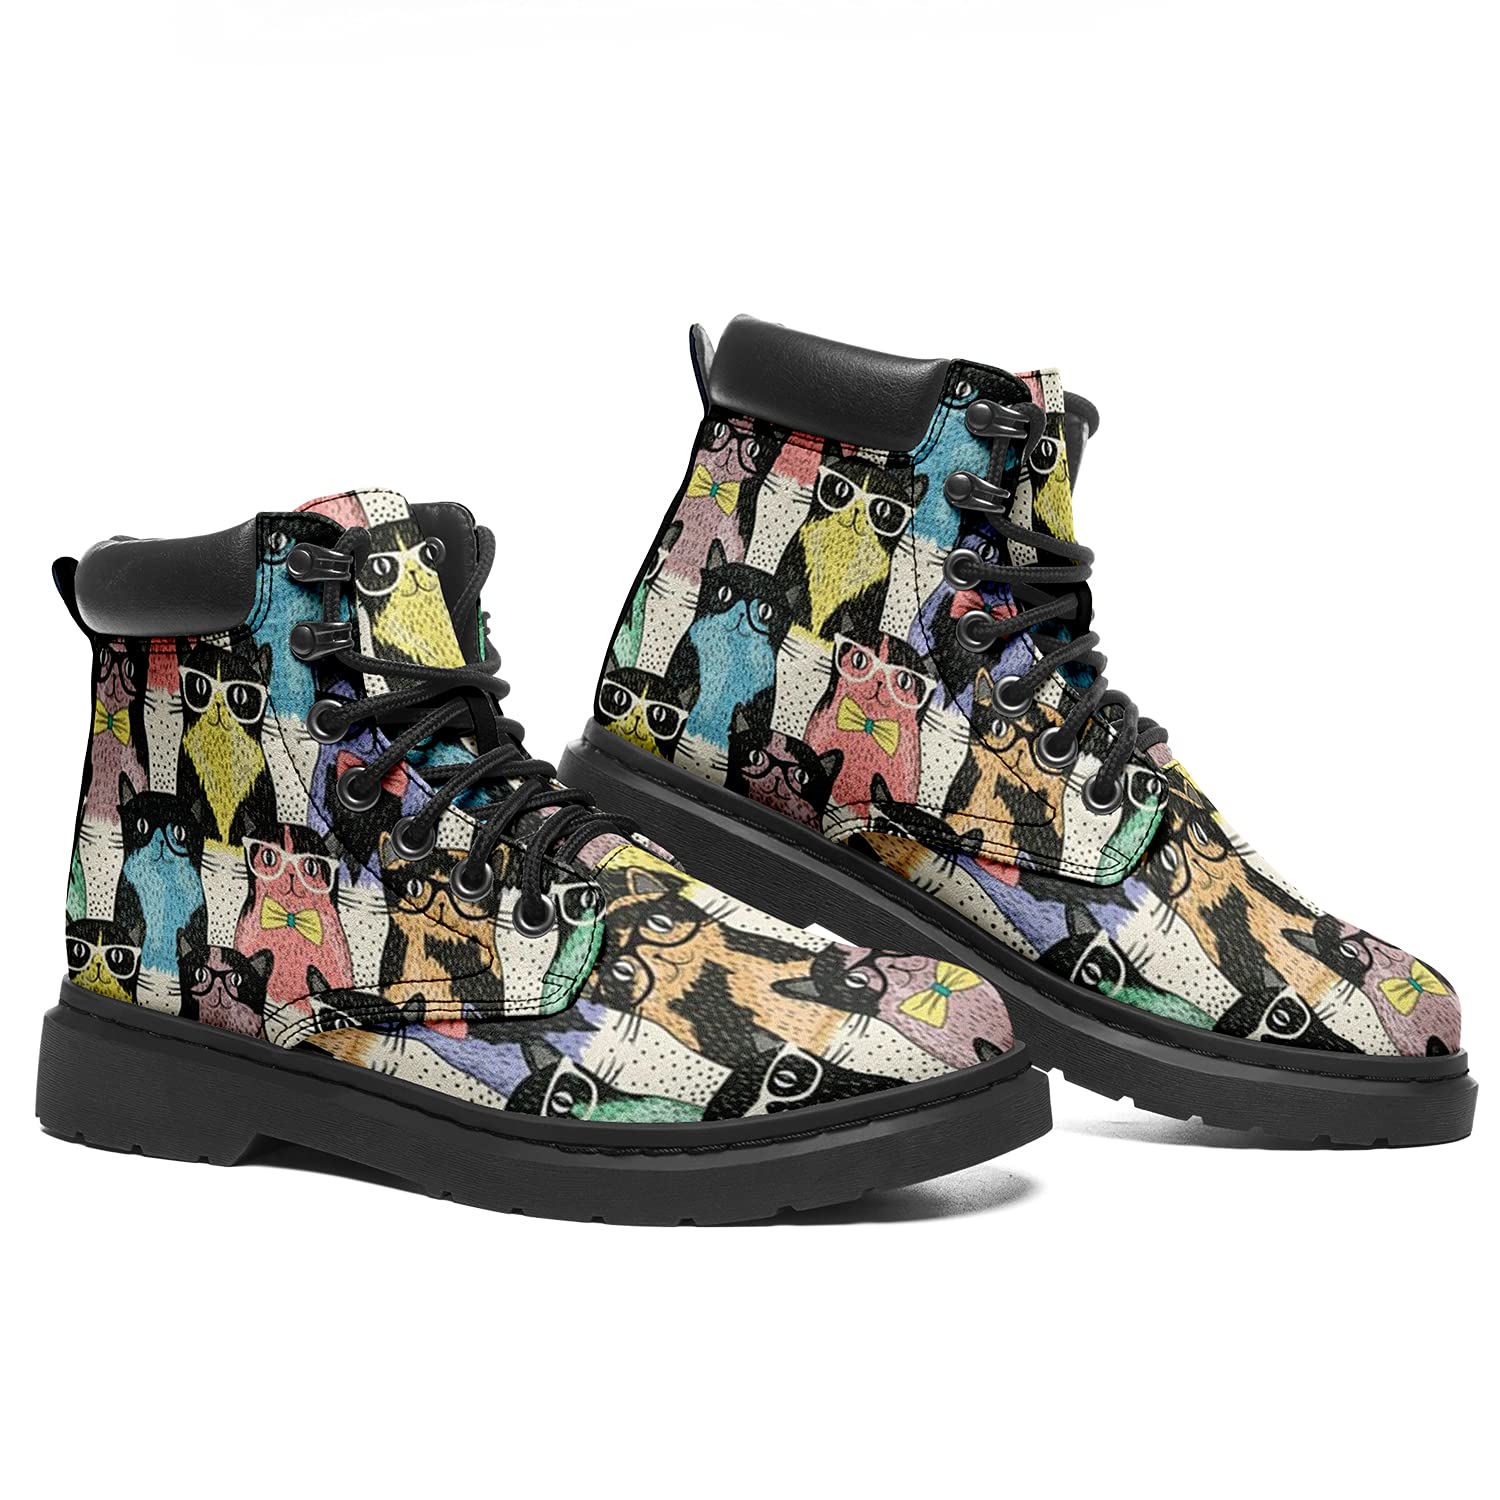 Классические ботинки с кошачьим принтом Ботильоны для женщин Кожаные женские модные армейские ботинки на шнуровке